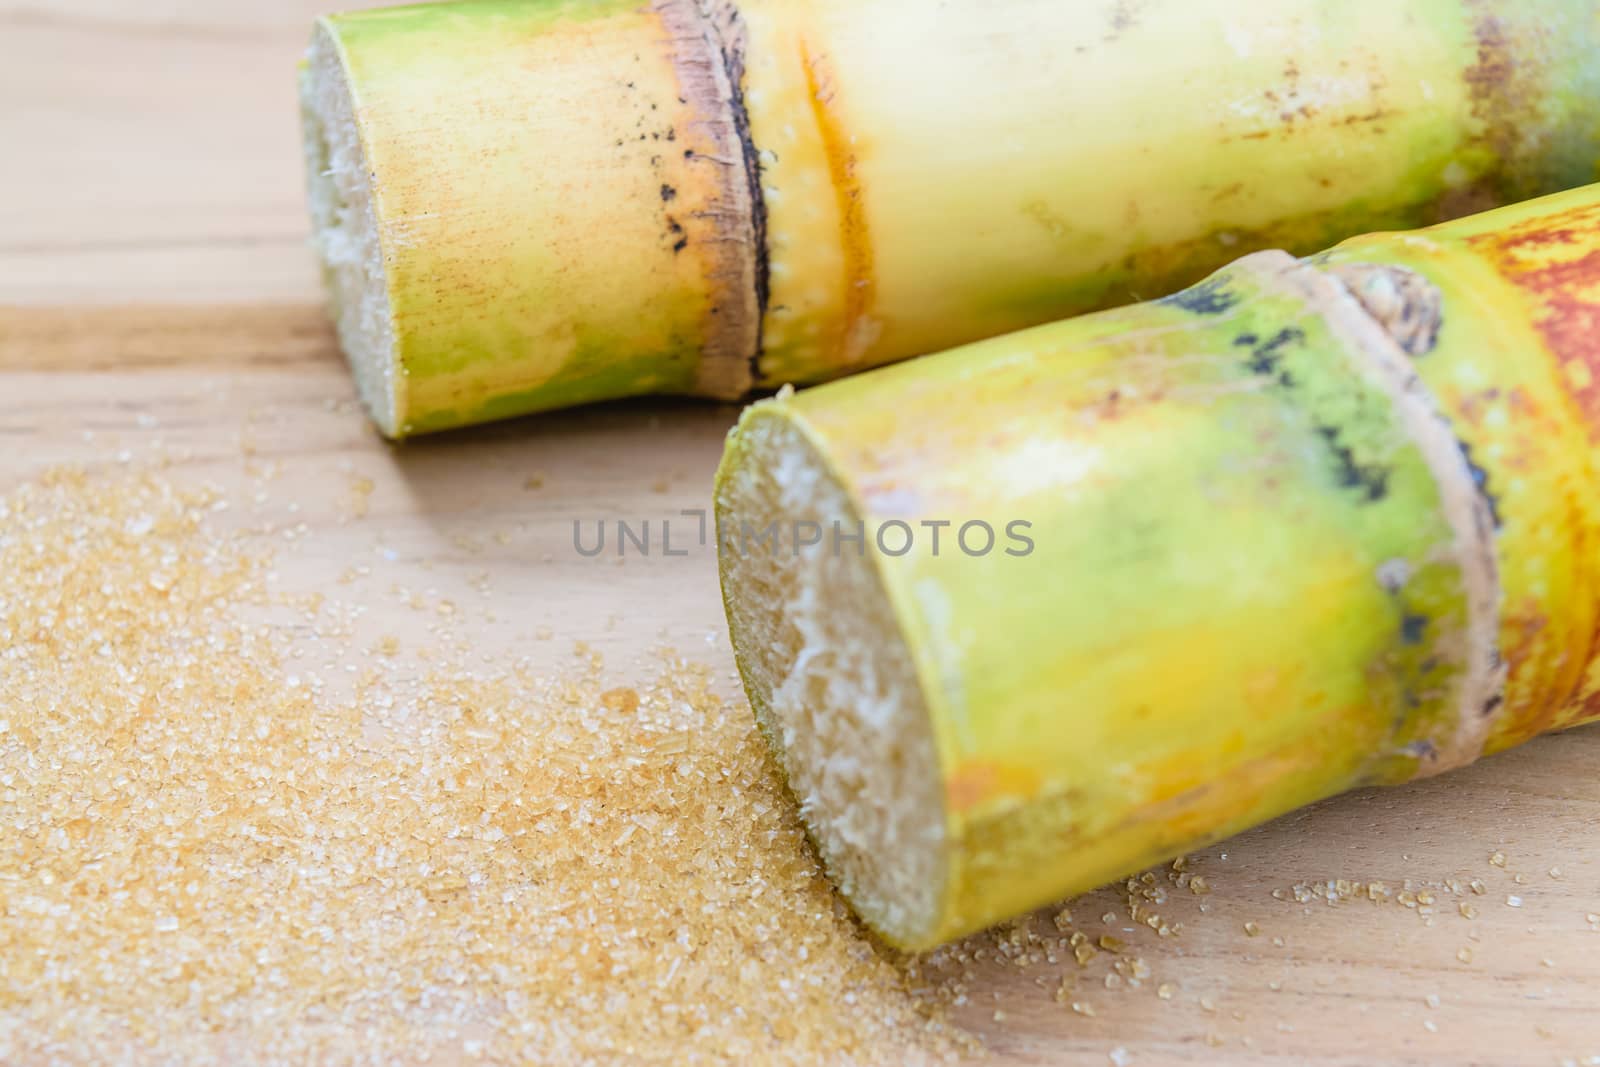 brown sugar and sugarcane by naramit